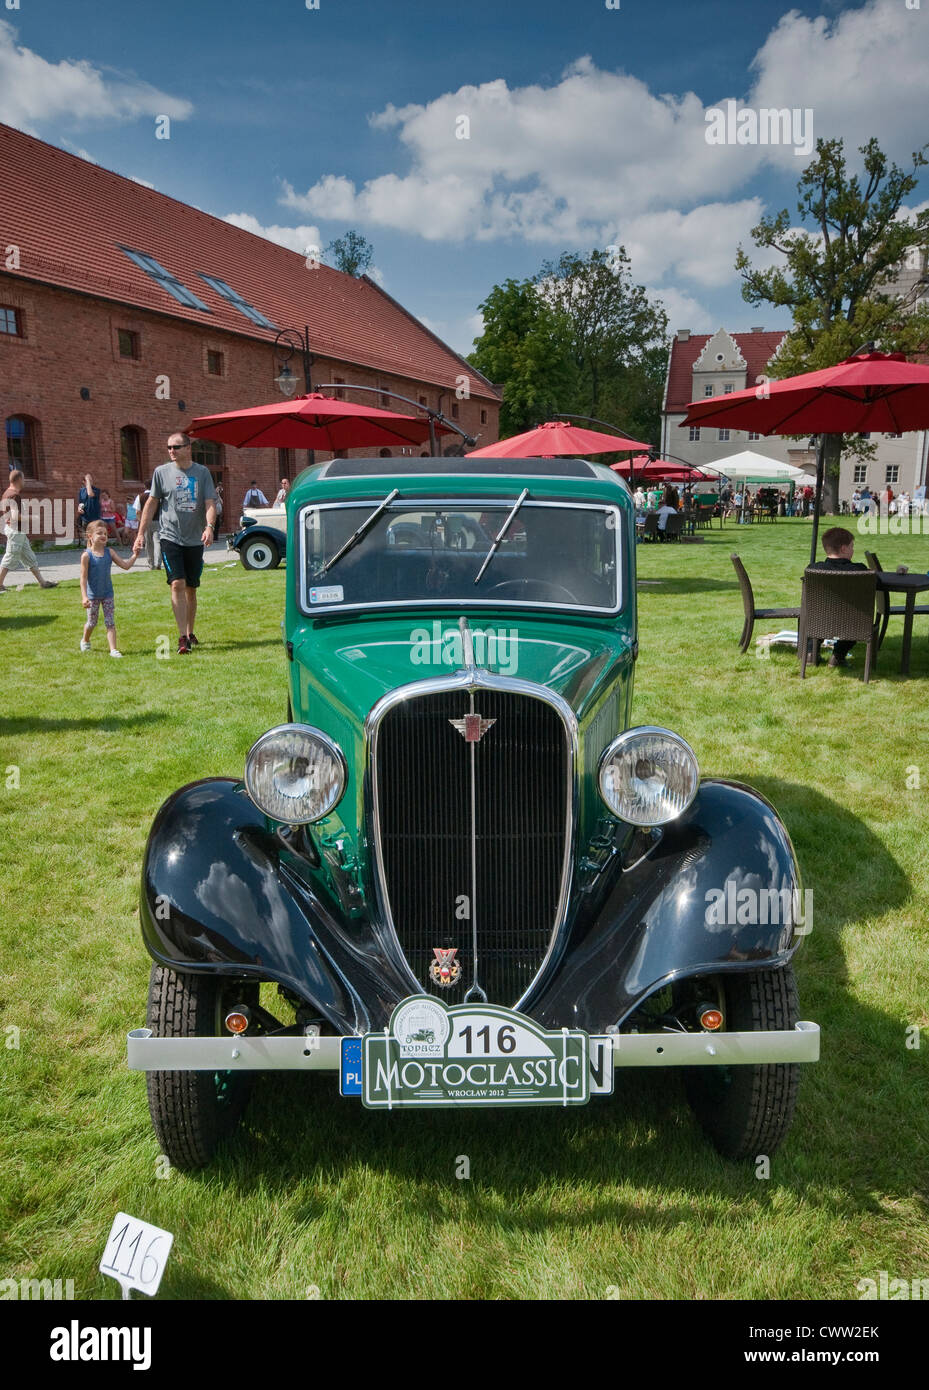 1935 Polski Fiat 508 III Junak a Motoclassic car show al Castello Topacz in Kobierzyce vicino a Wroclaw, Bassa Slesia, Polonia Foto Stock